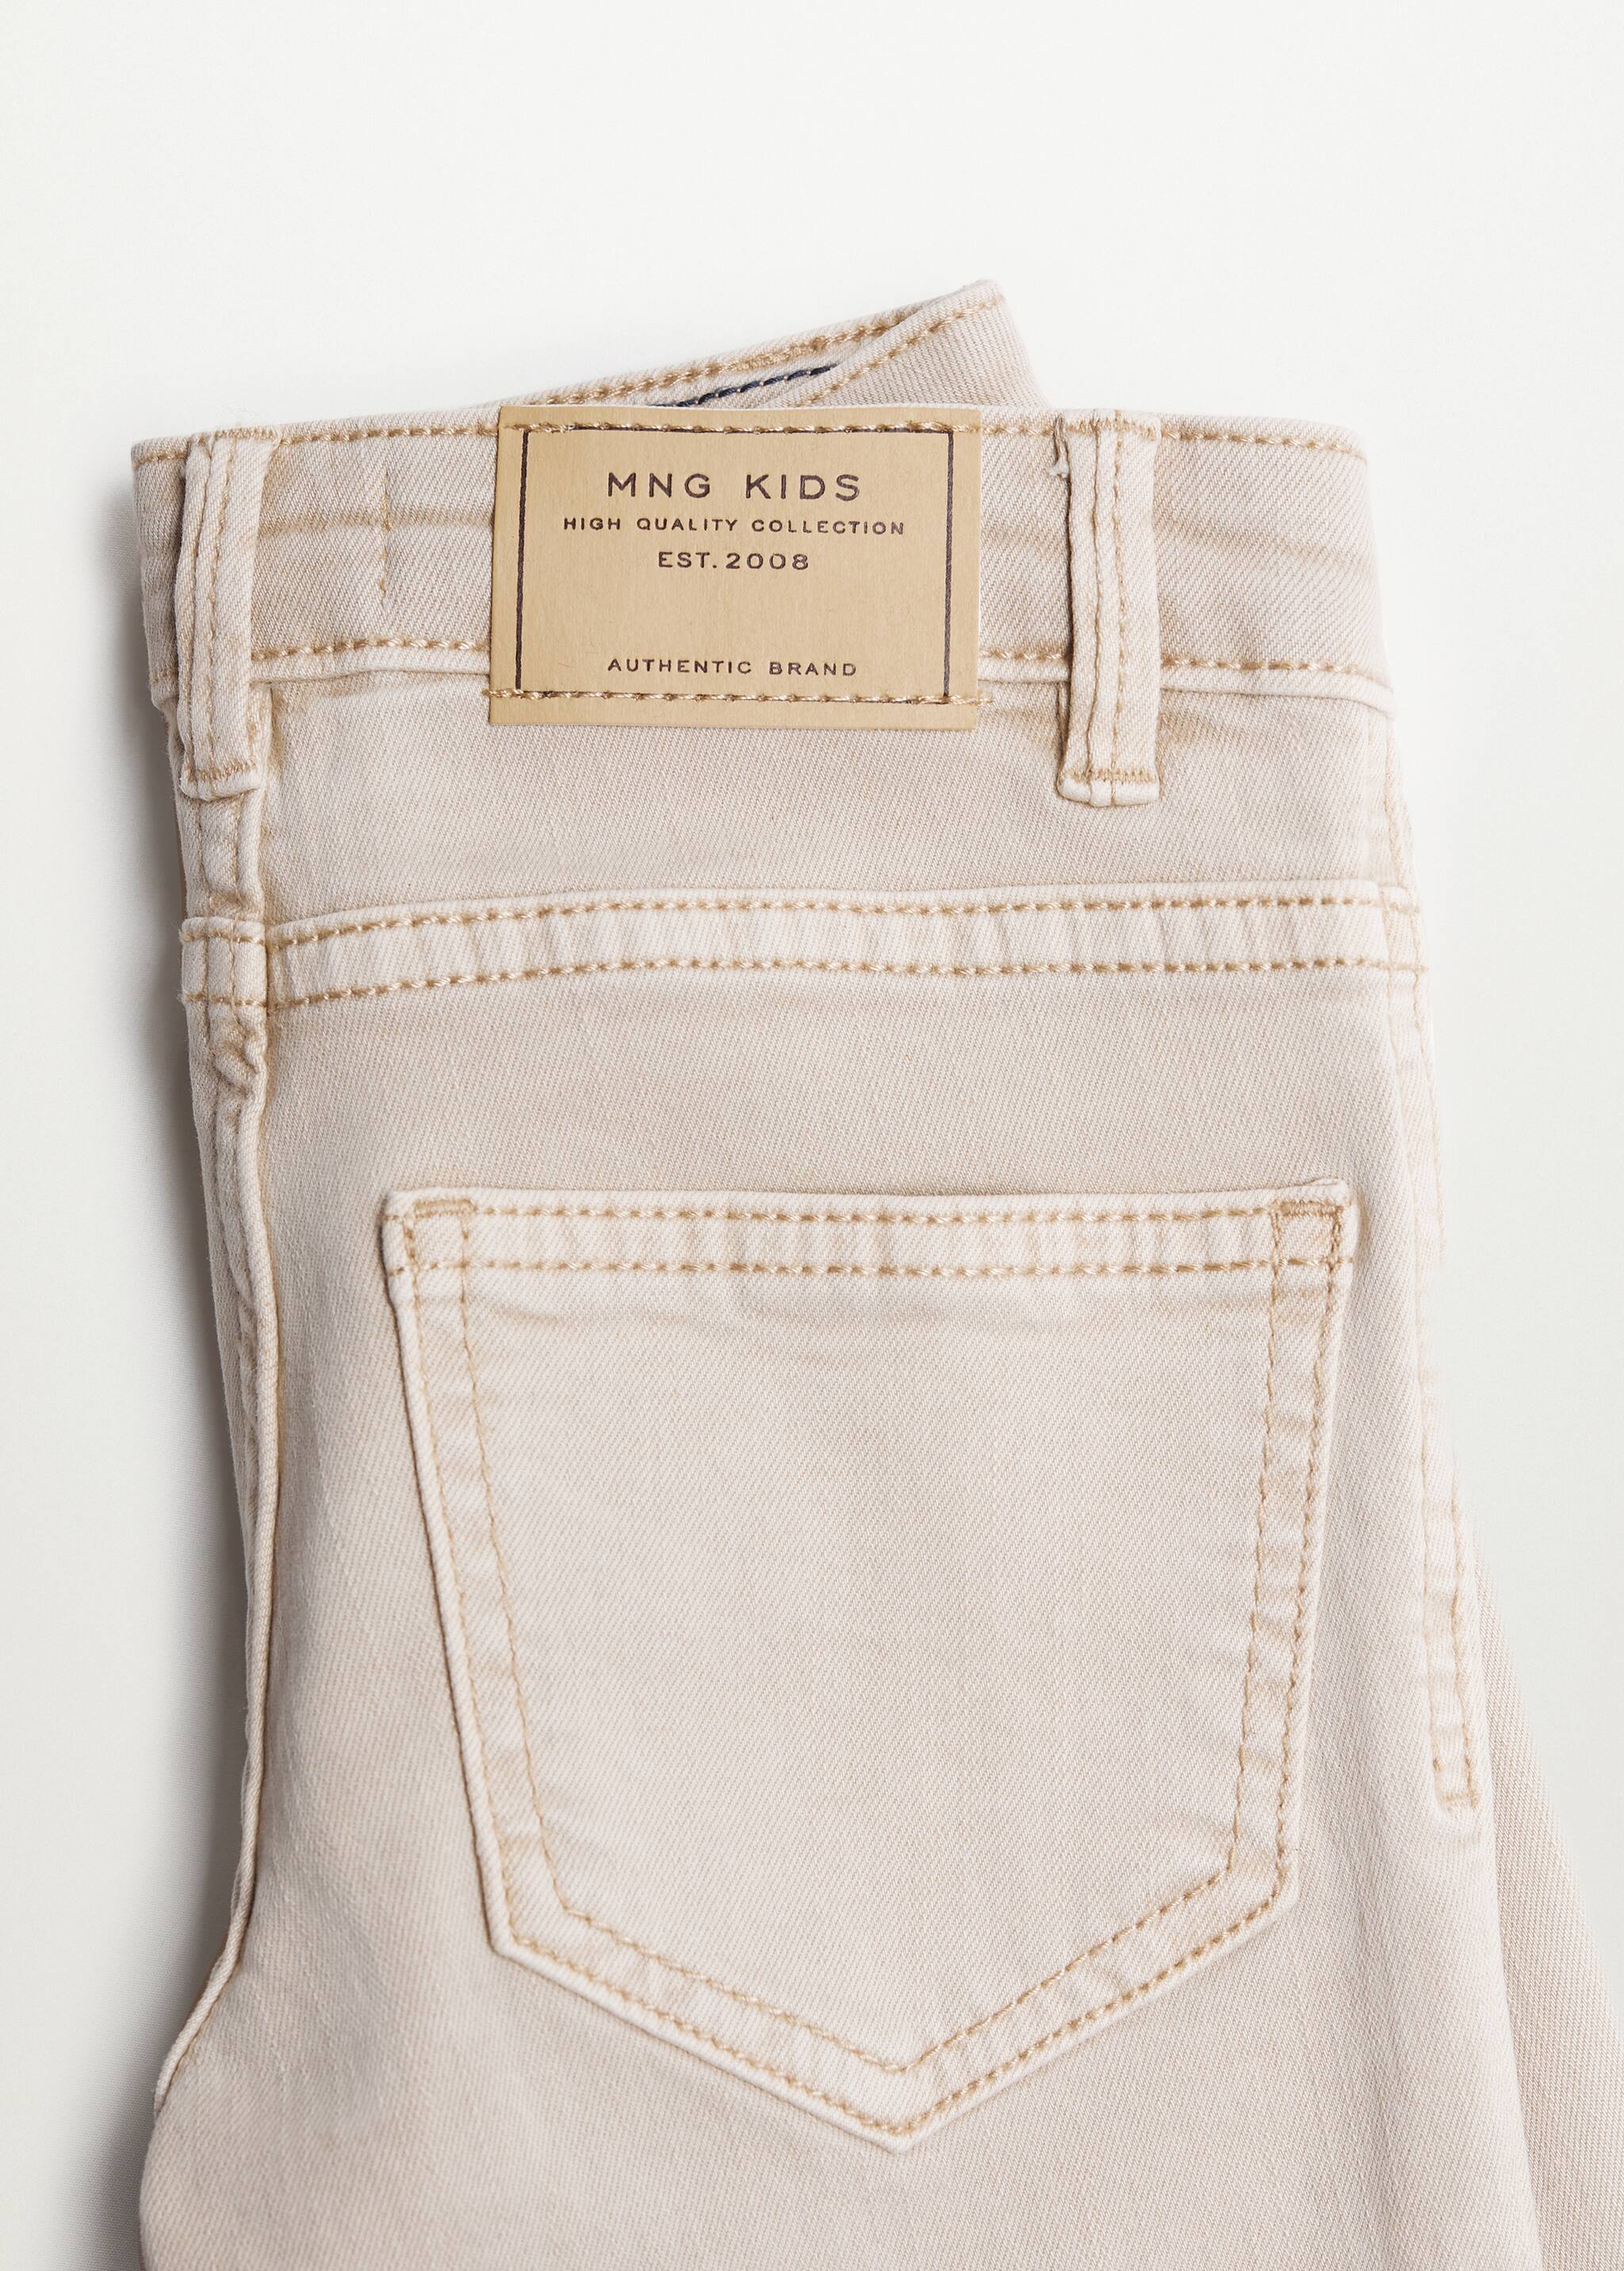 Pantalon slim fit coton - Détail de l'article 8